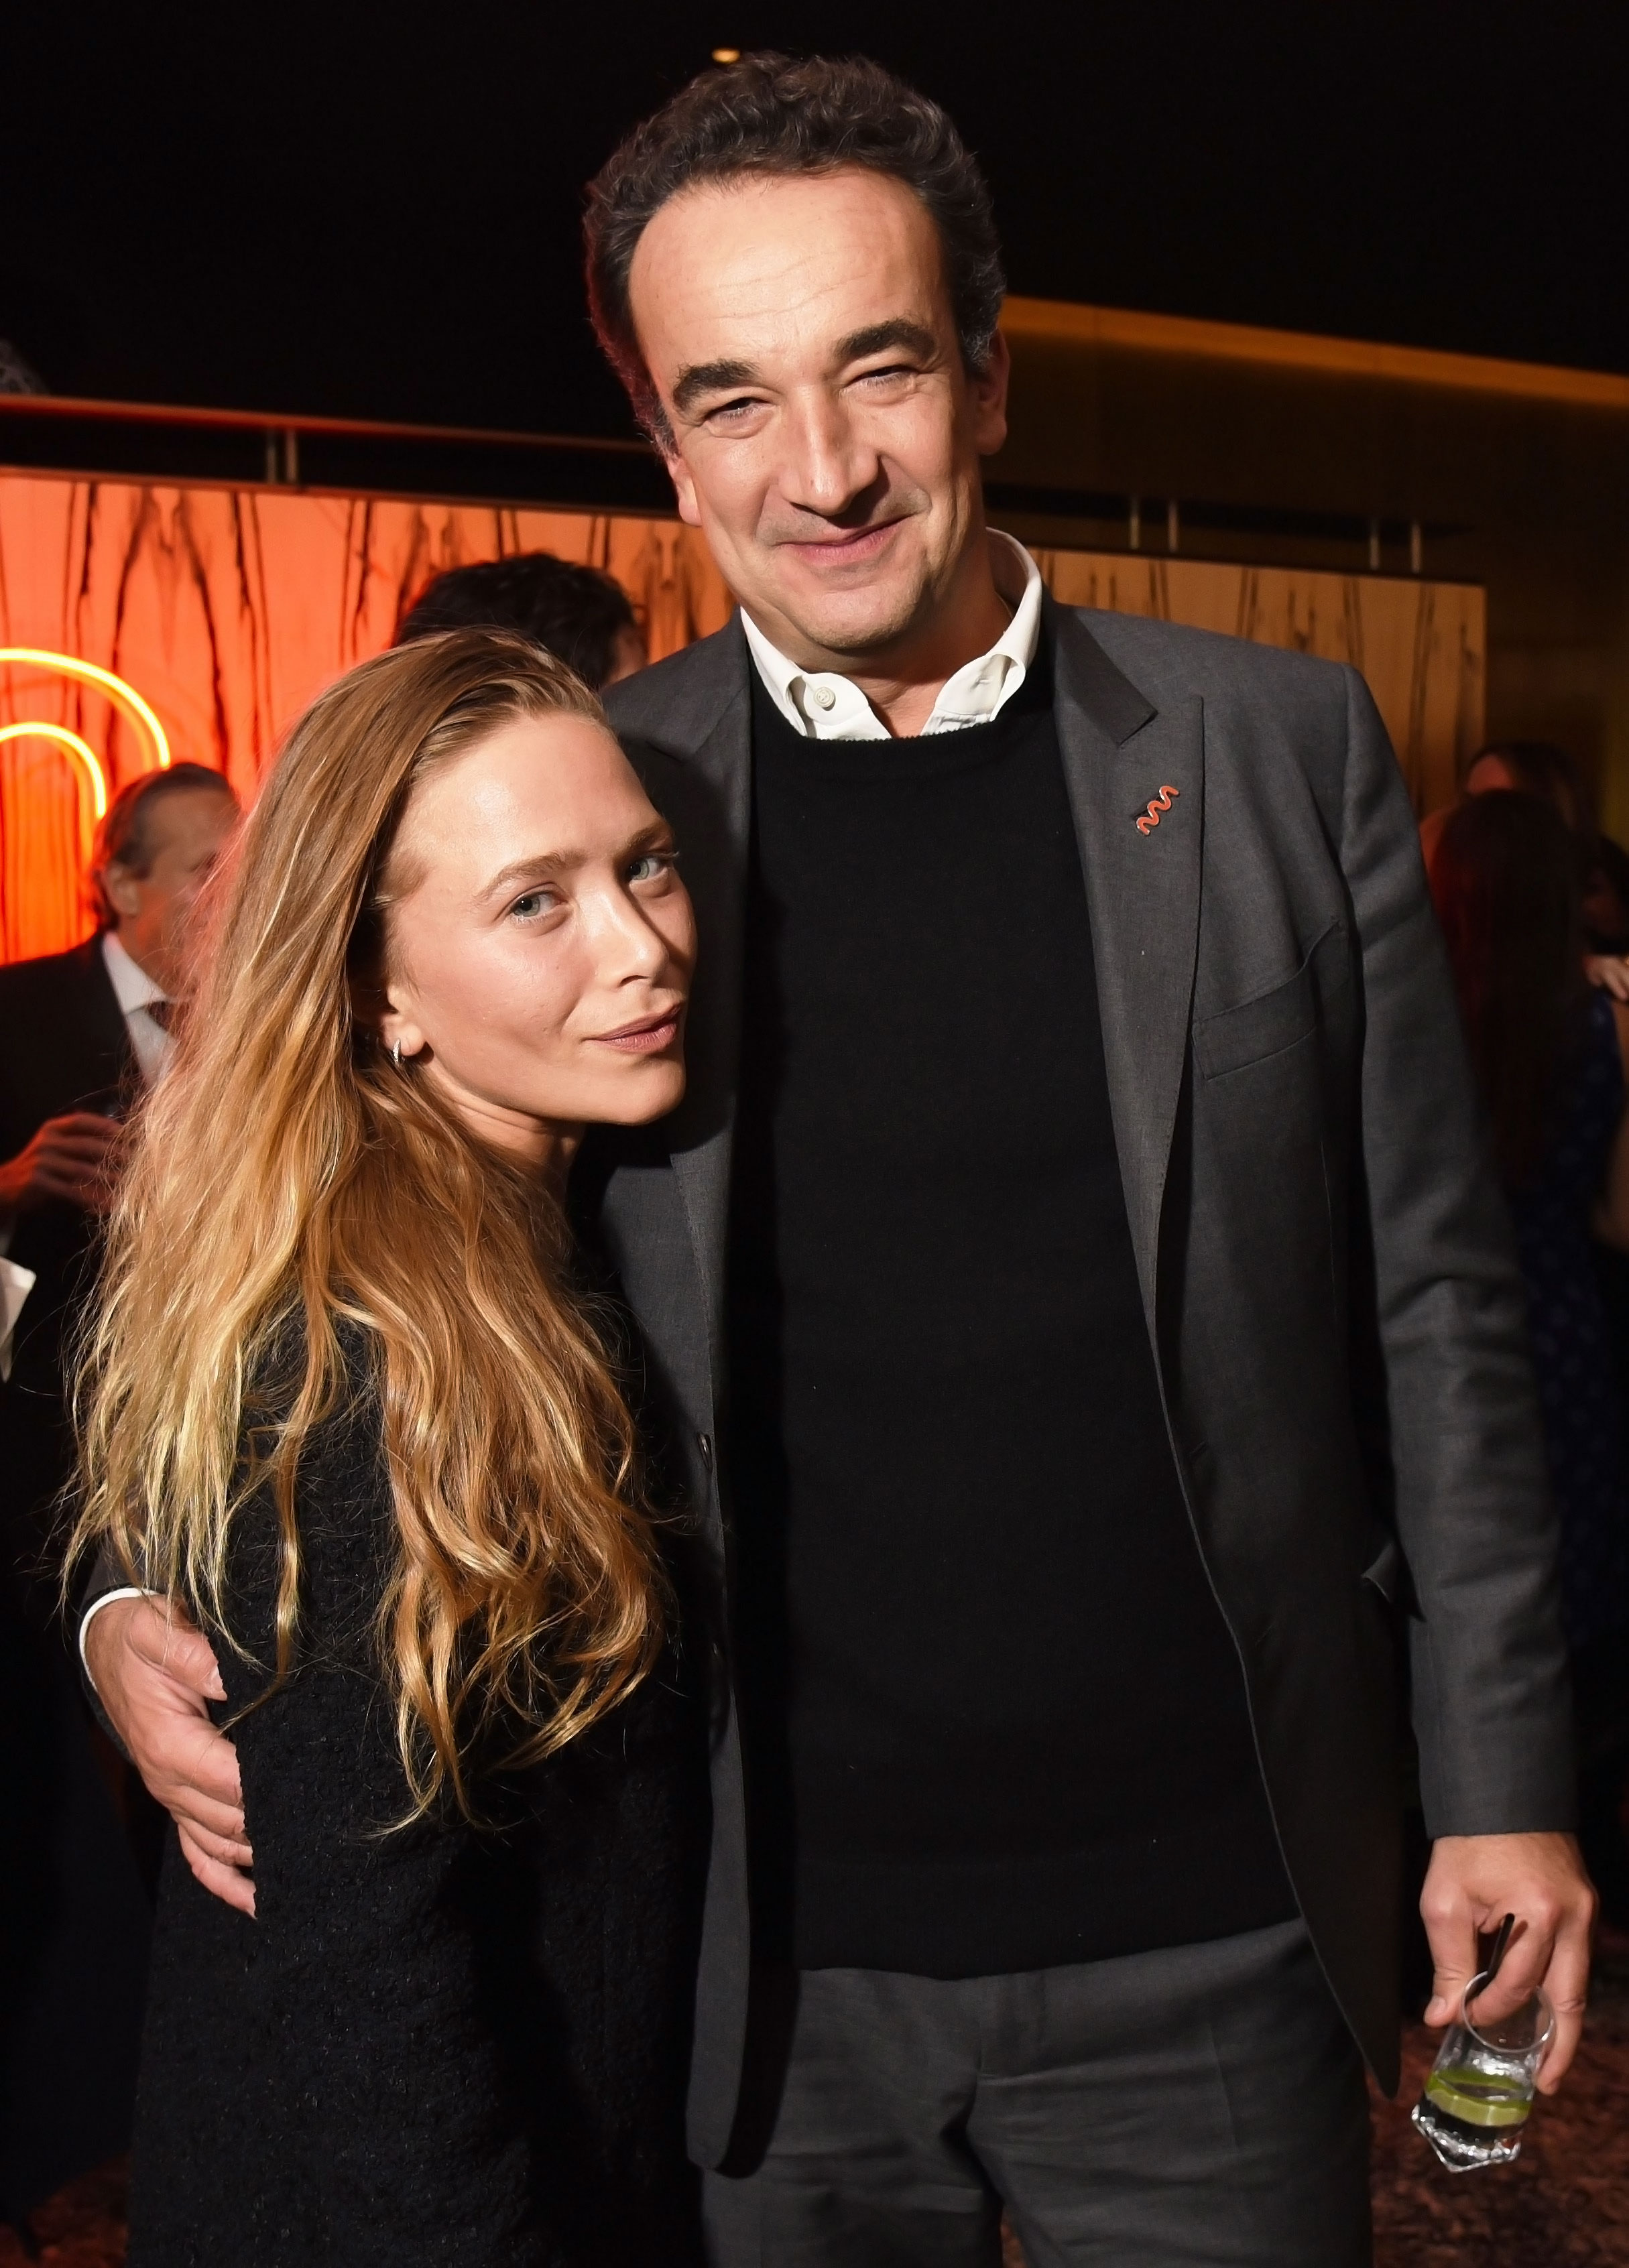 Olsen's Estranged Husband Sarkozy: What to Know